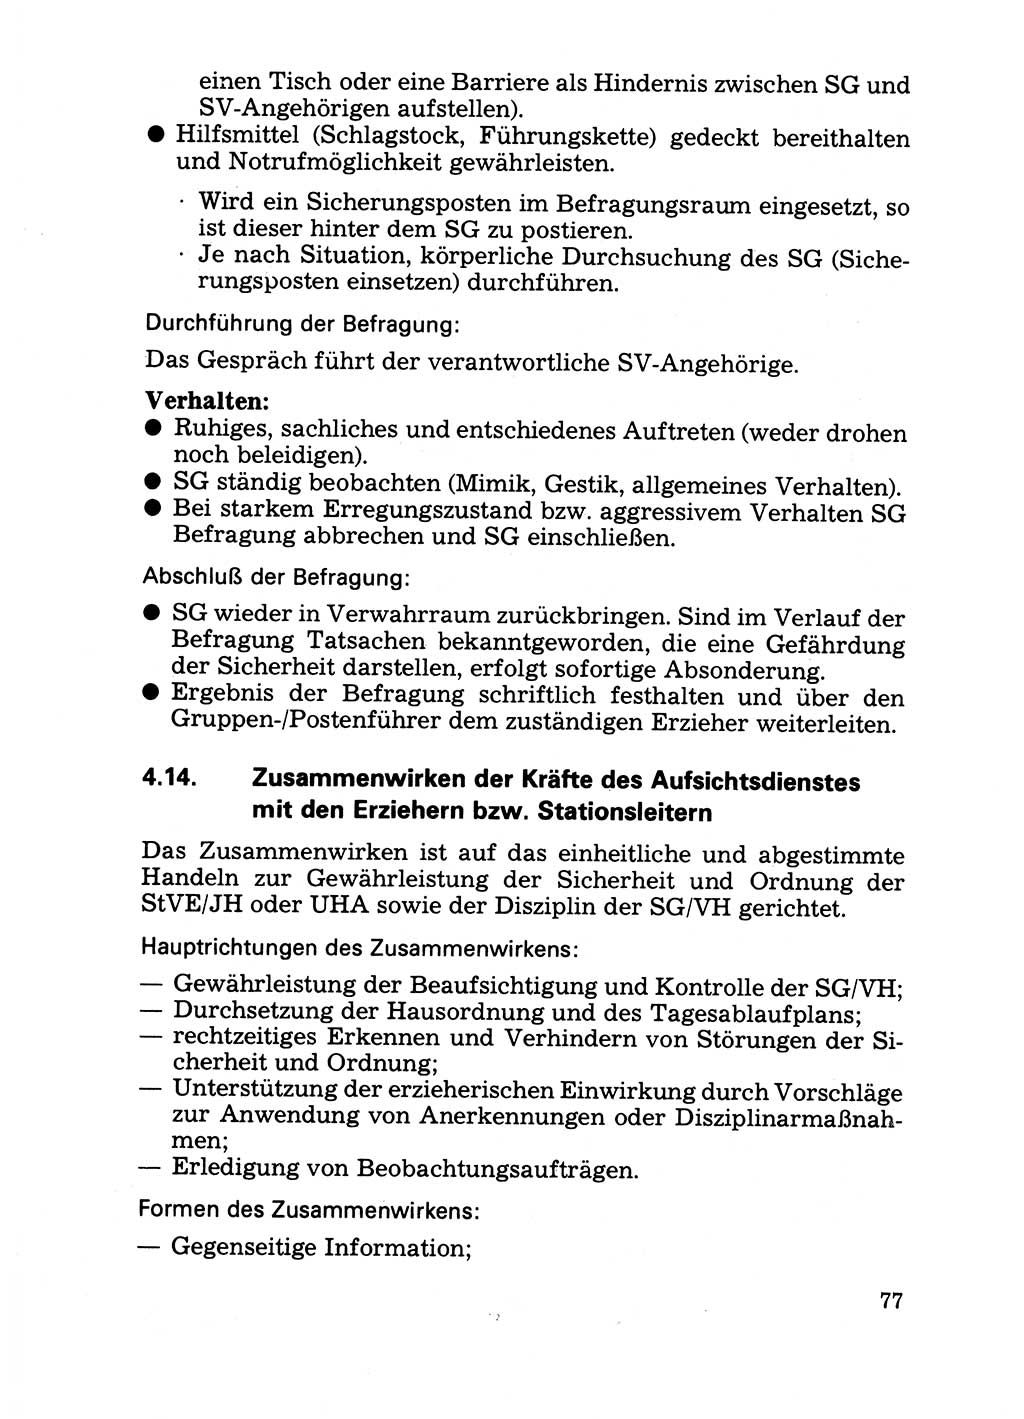 Handbuch für operative Dienste, Abteilung Strafvollzug (SV) [Ministerium des Innern (MdI) Deutsche Demokratische Republik (DDR)] 1981, Seite 77 (Hb. op. D. Abt. SV MdI DDR 1981, S. 77)